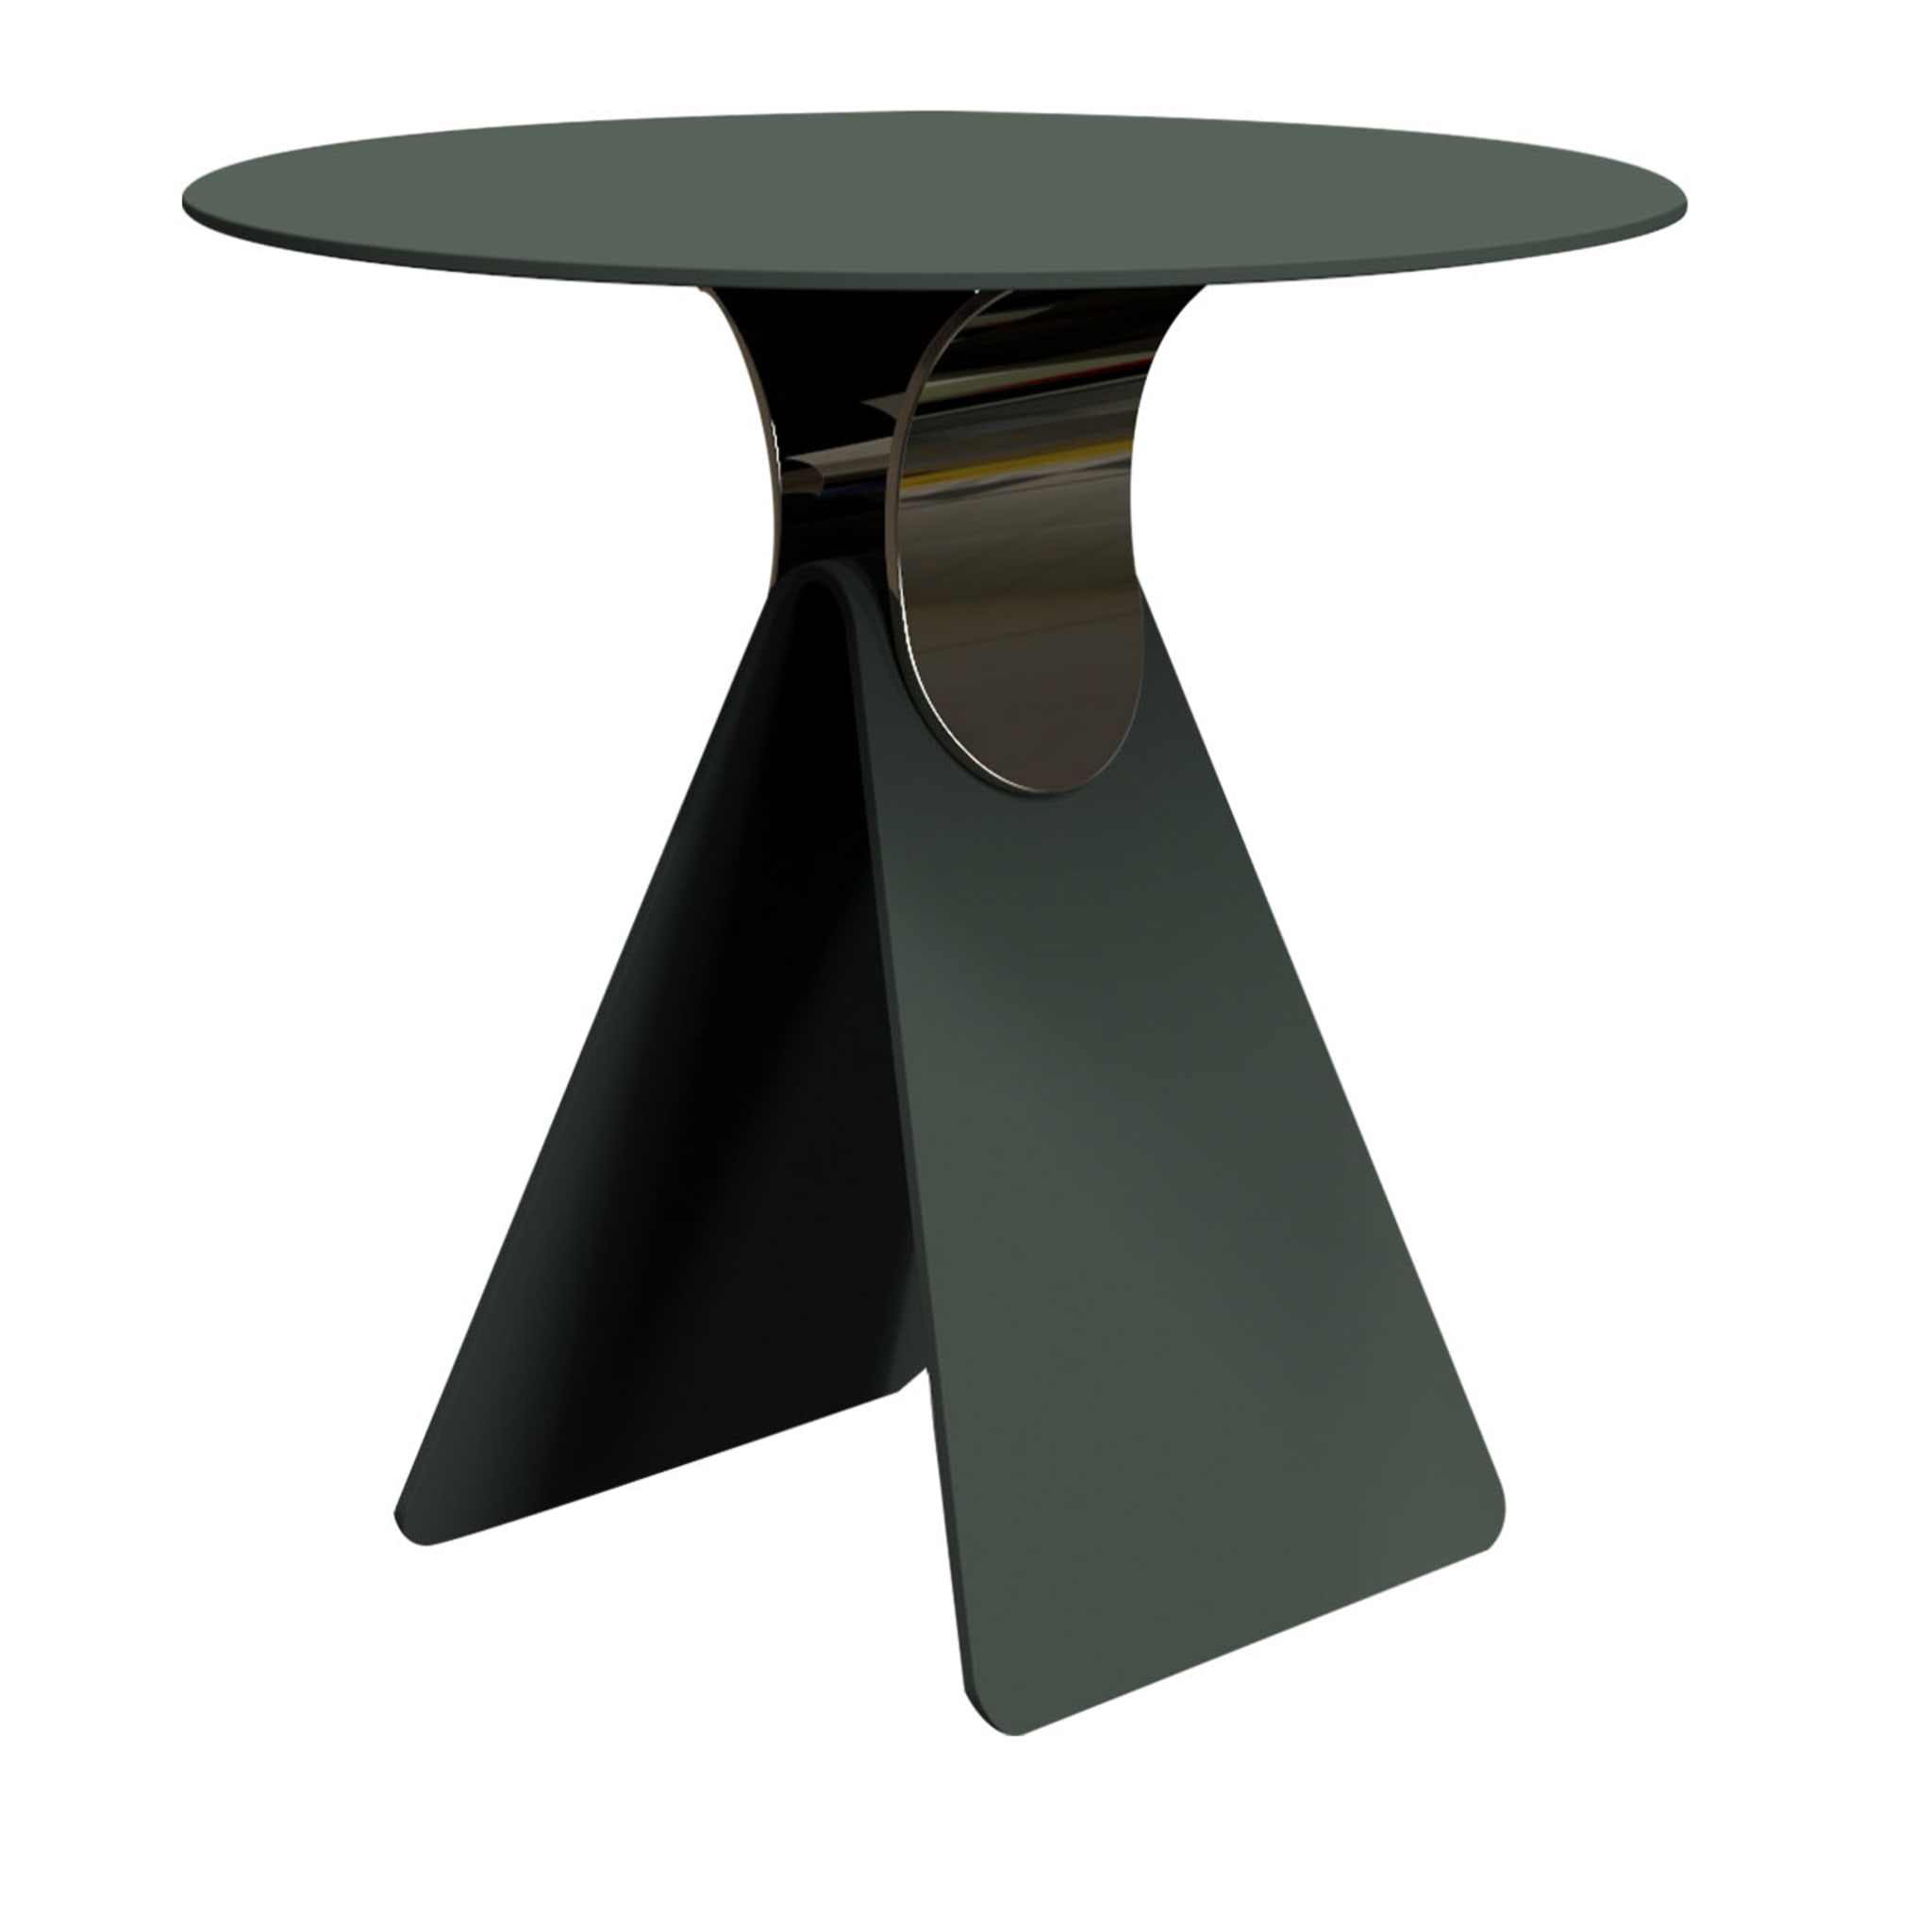 Cipputi Green & Black Side Table by Quaglio Simonelli - Main view